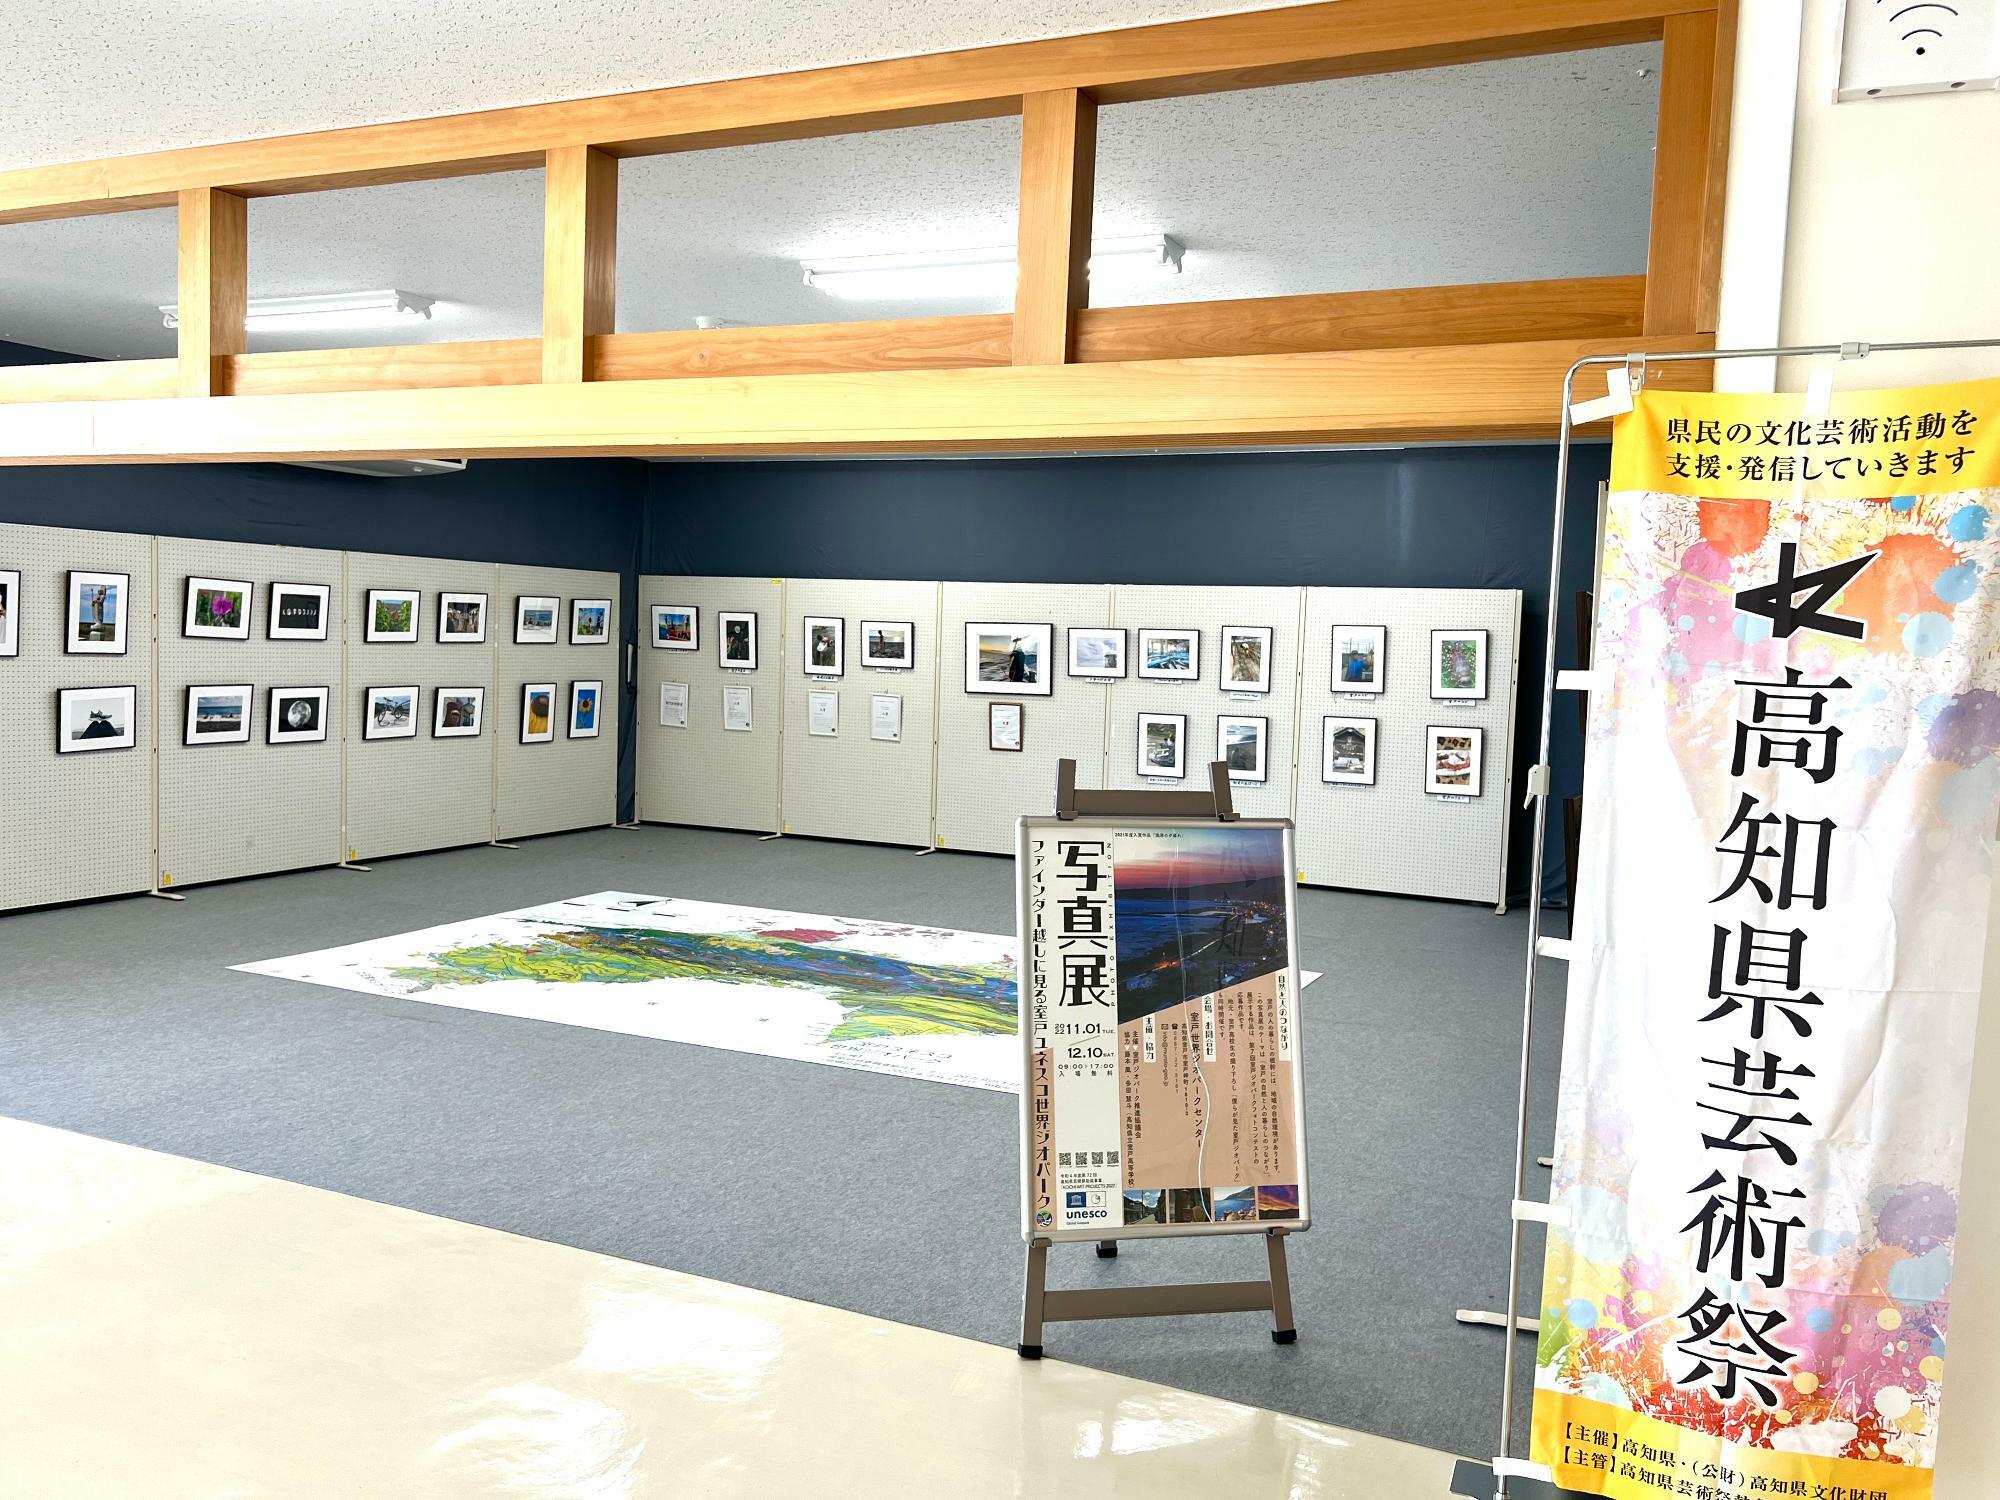 高知県芸術祭の助成事業開催とのこと